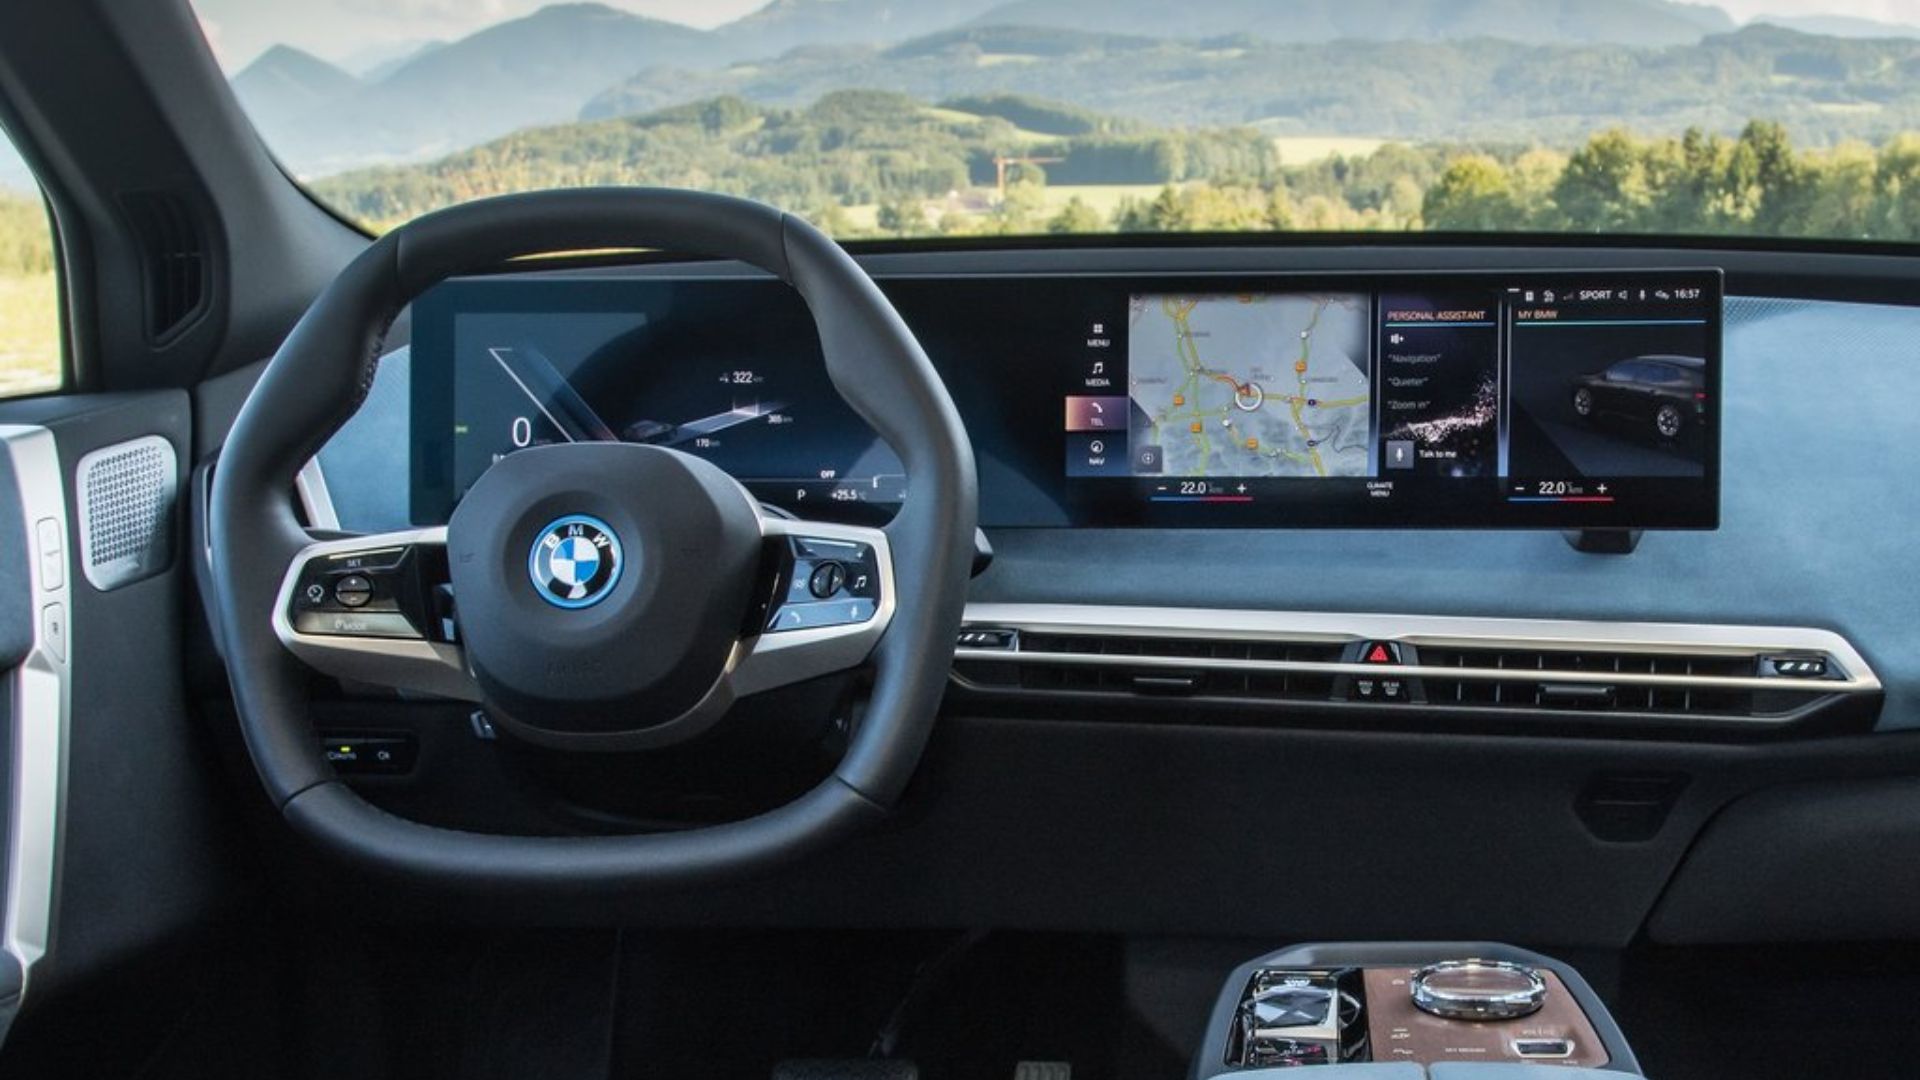 Fitur interior BMW